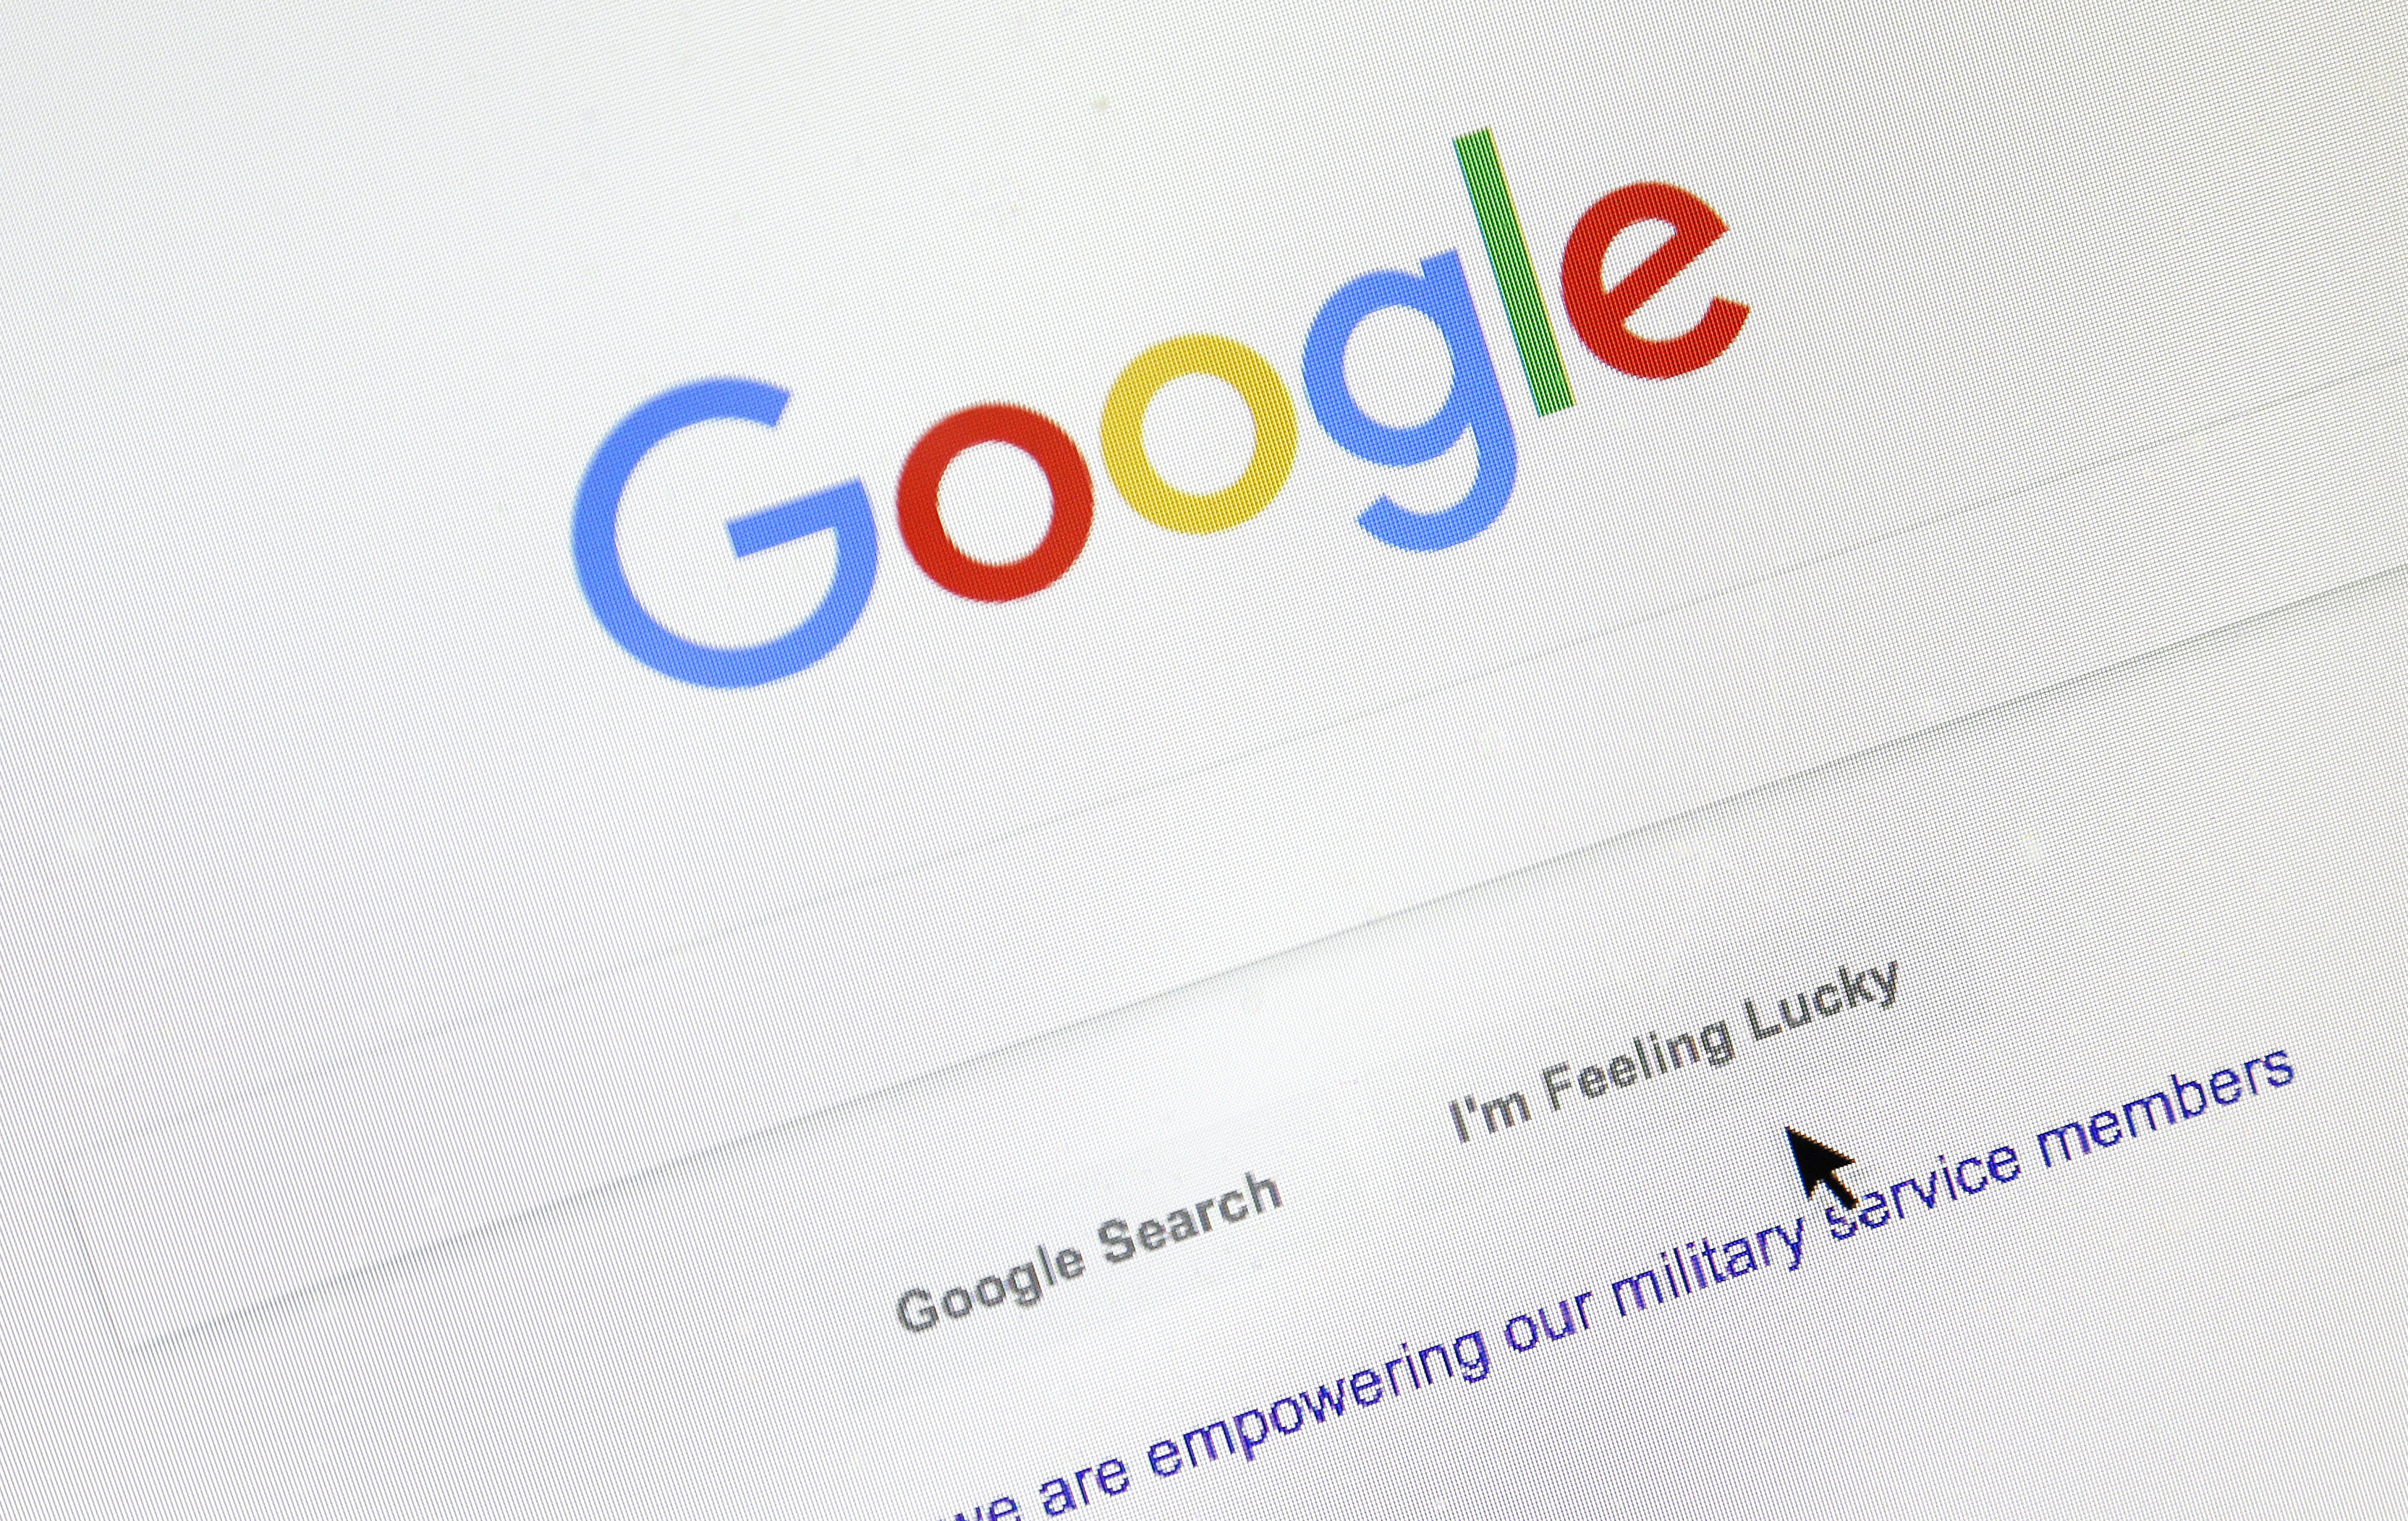 Google caído: los servicios del buscador, inutilizados durante una hora